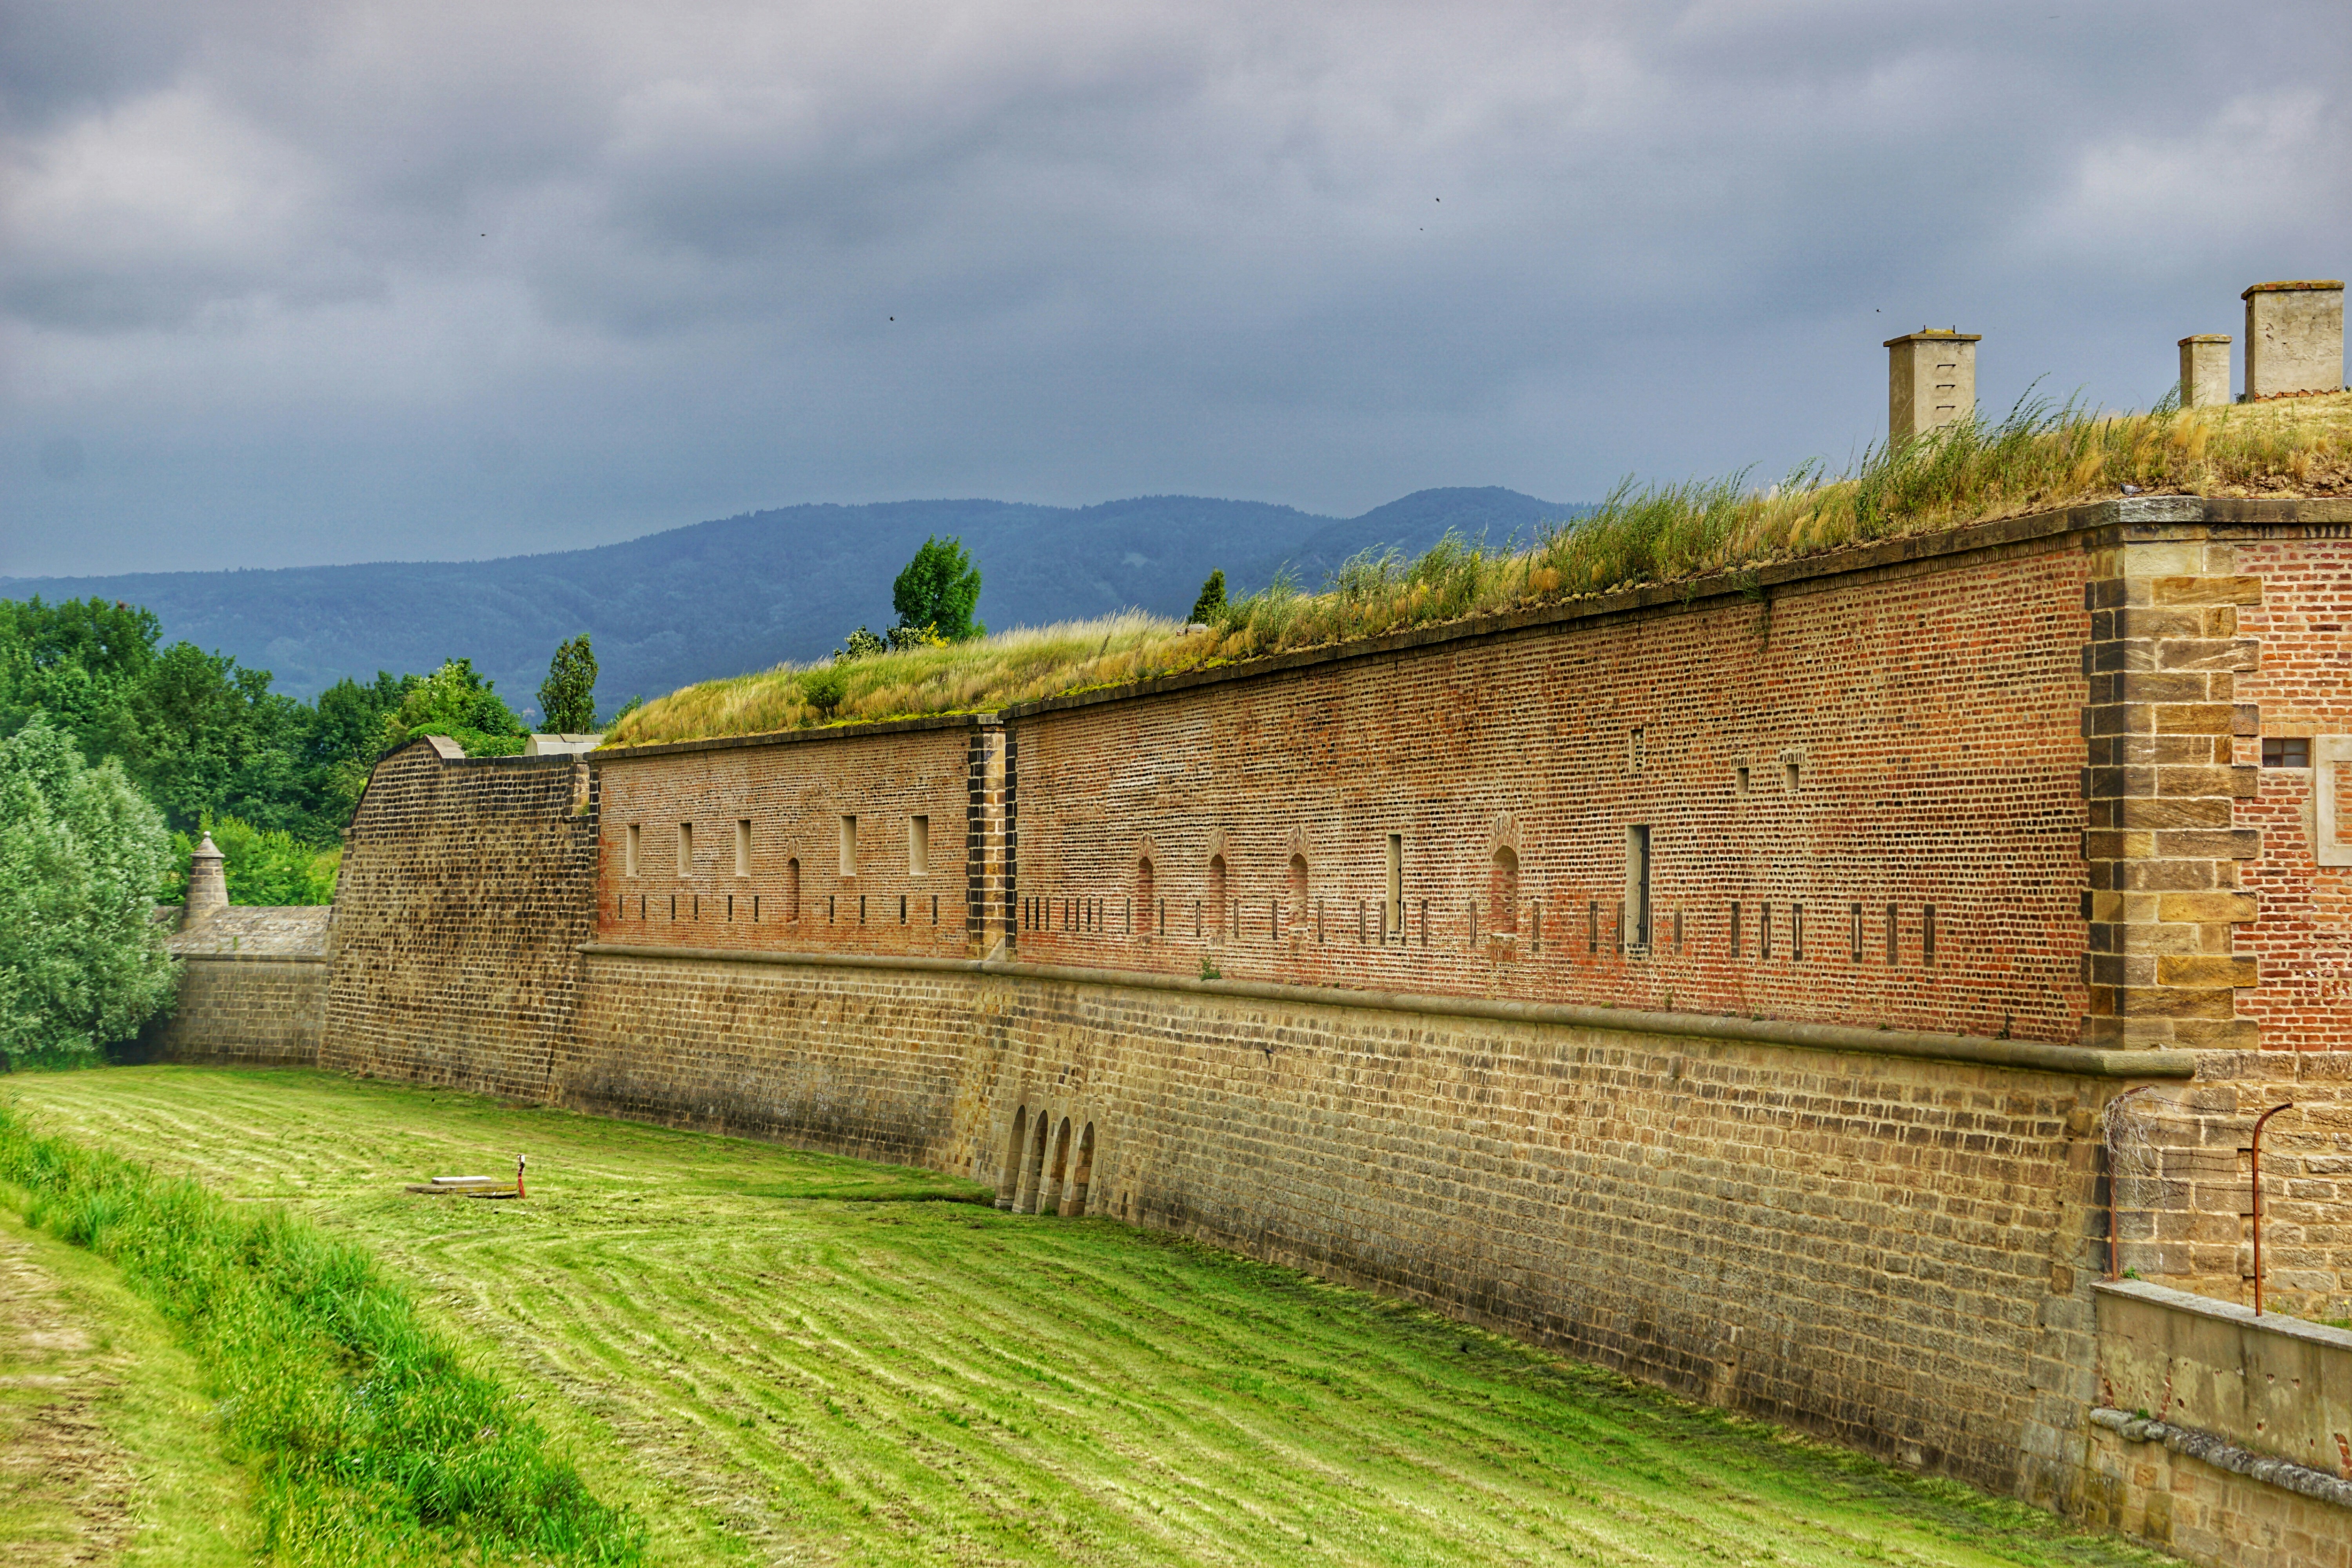 Gammal tegelfästning med grästak och öppet grönt fält framför under molnig himmel, historiskt försvarsverk i Tjeckien.